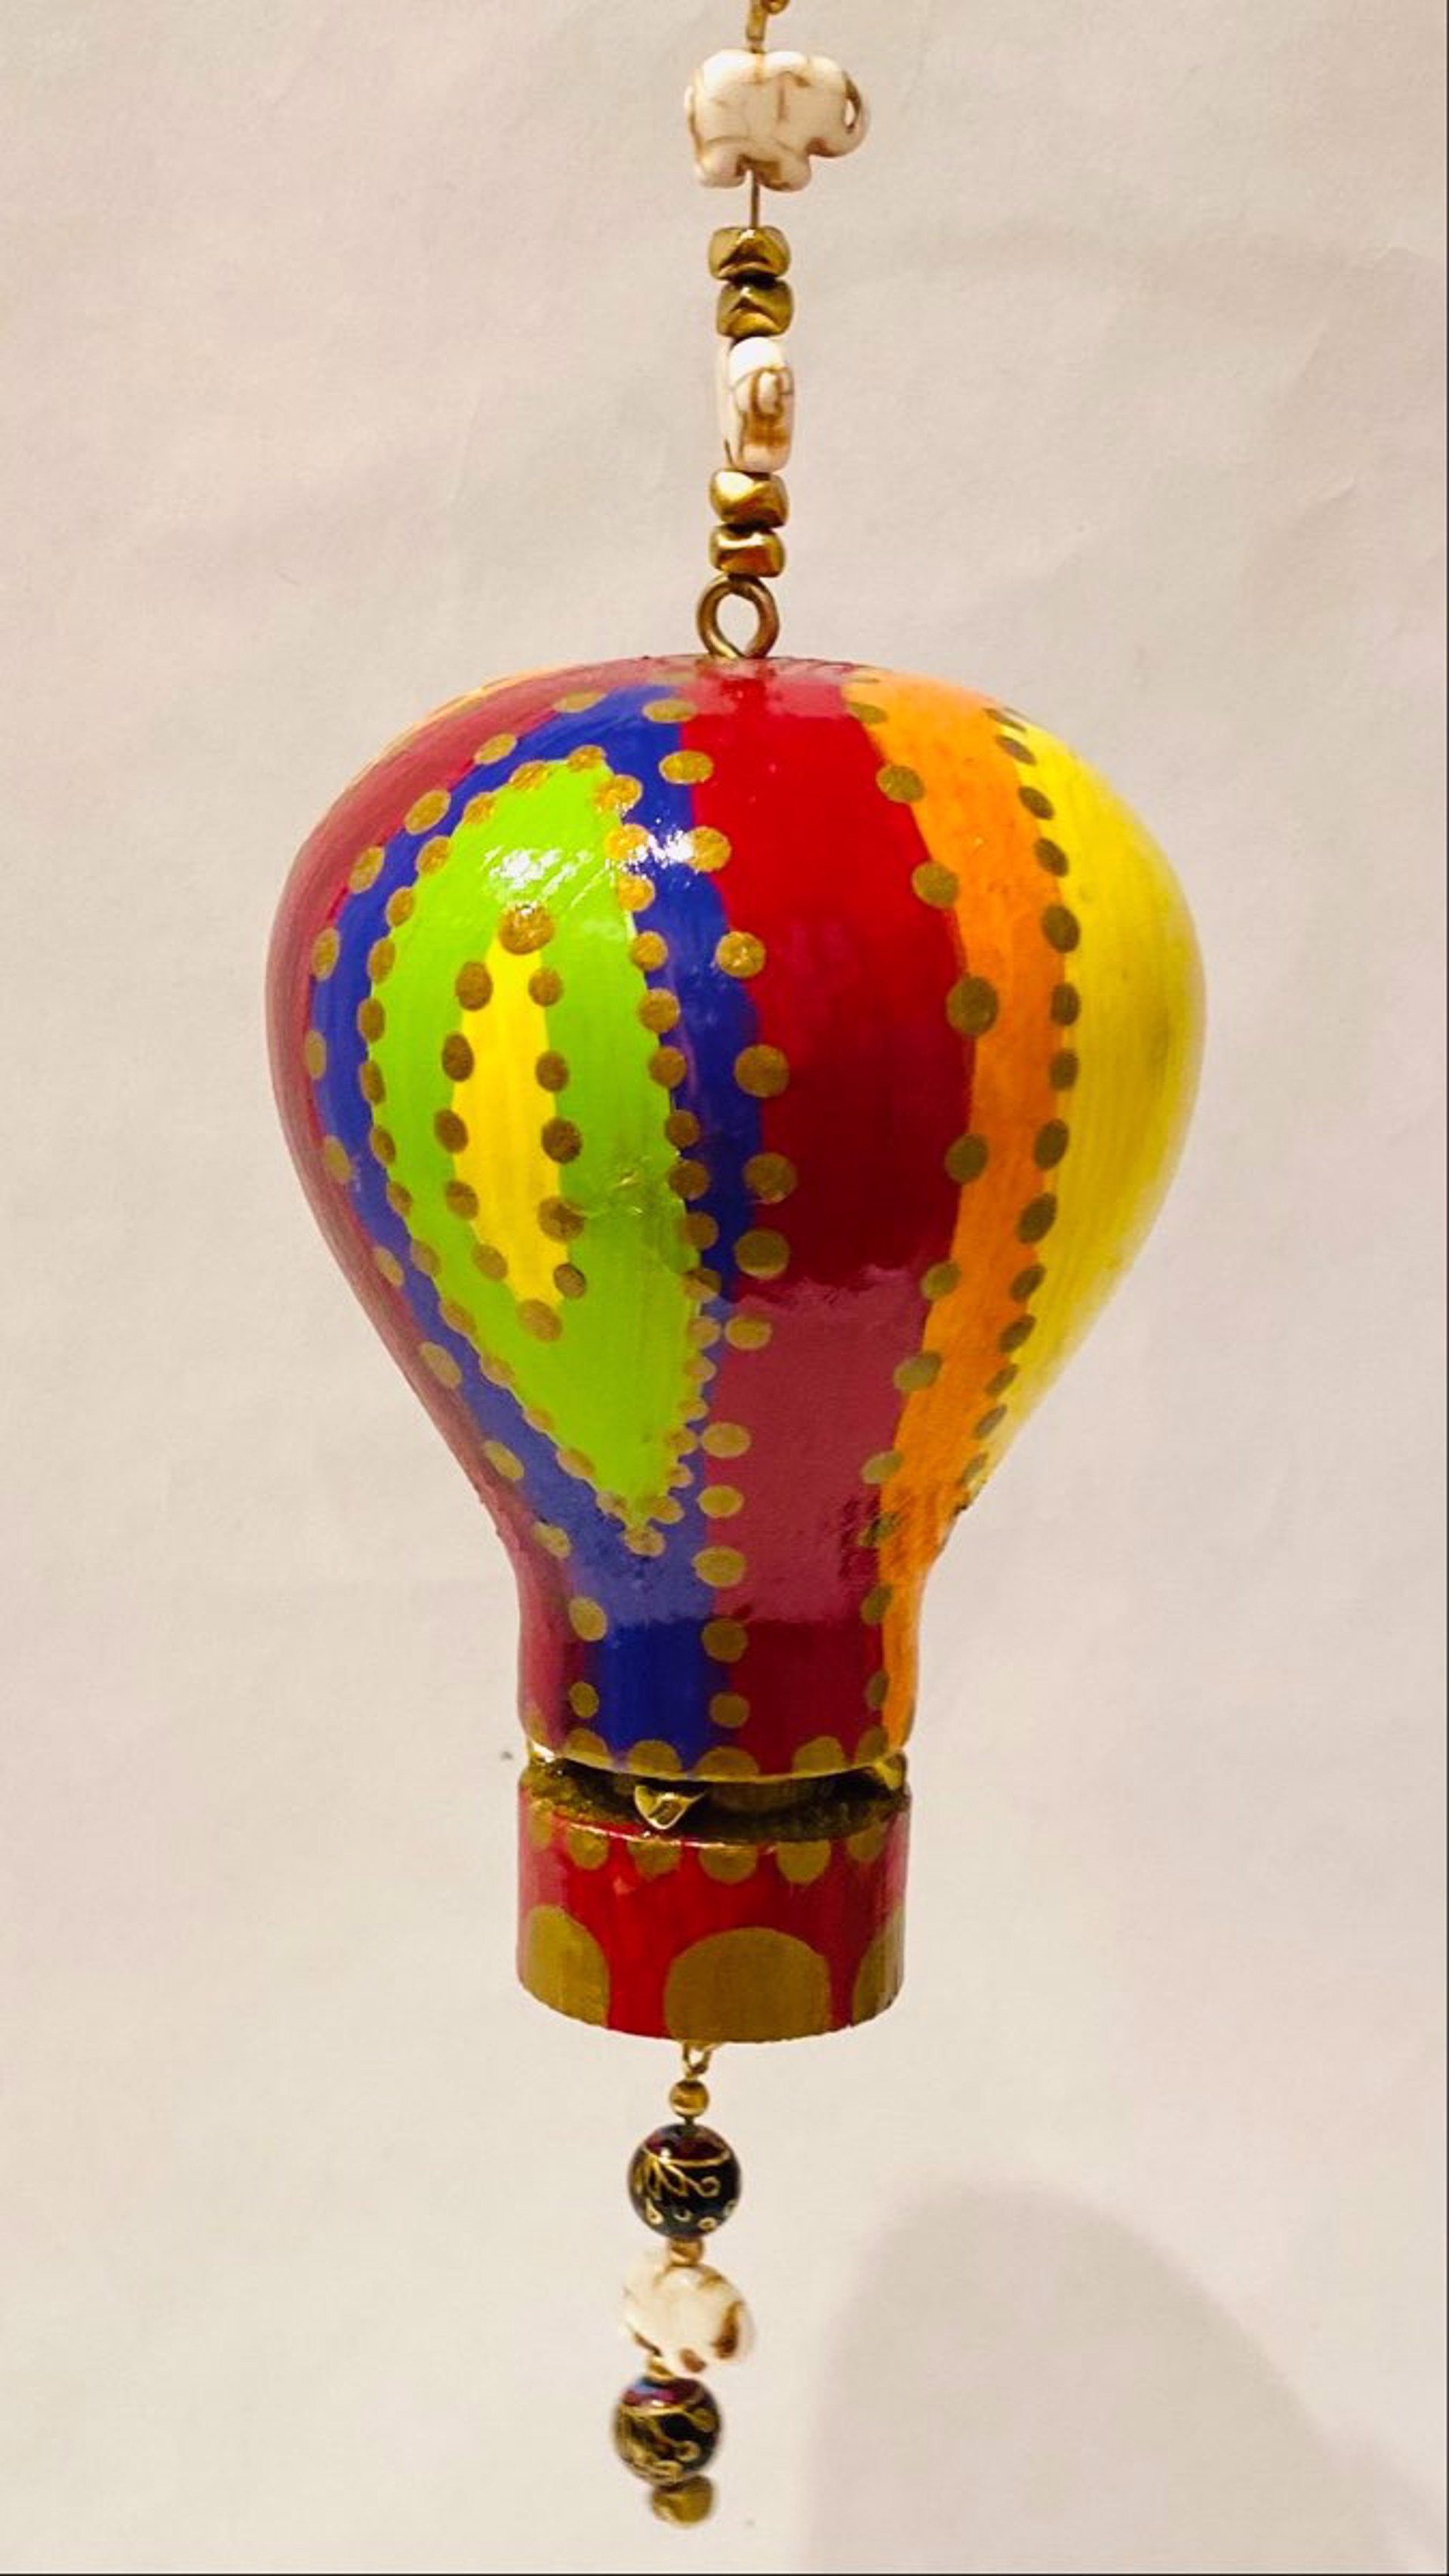 MT22-45 Whimsical Hot Air Balloon Ornament by Marc Tannenbaum